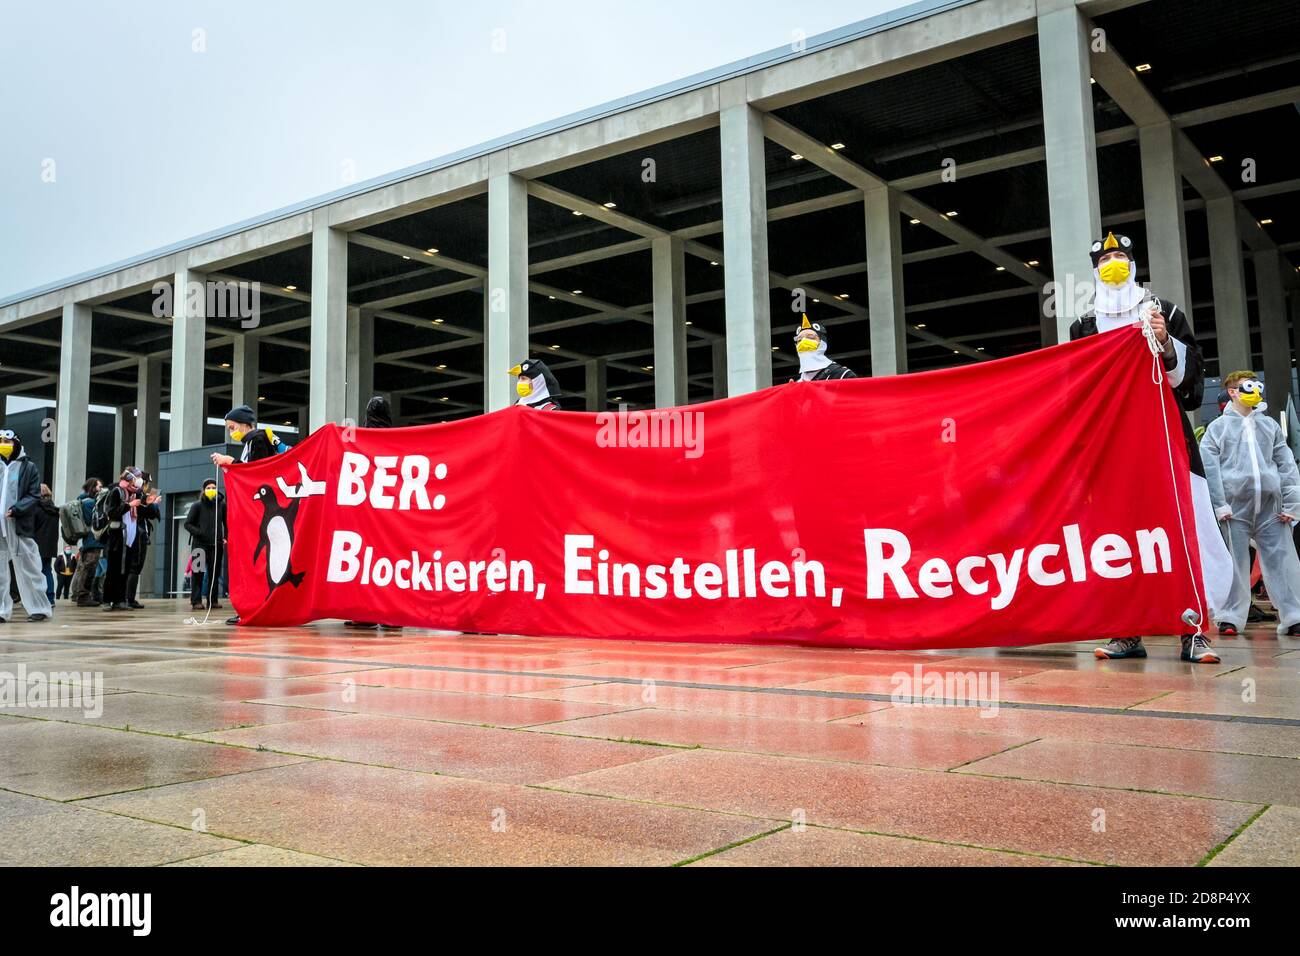 Il cartello "BER: Blockieren, einstellen, Recyclen", in quanto attivisti del clima, protesta contro l'apertura del nuovo aeroporto di Berlino-Brandeburgo (BER). Foto Stock